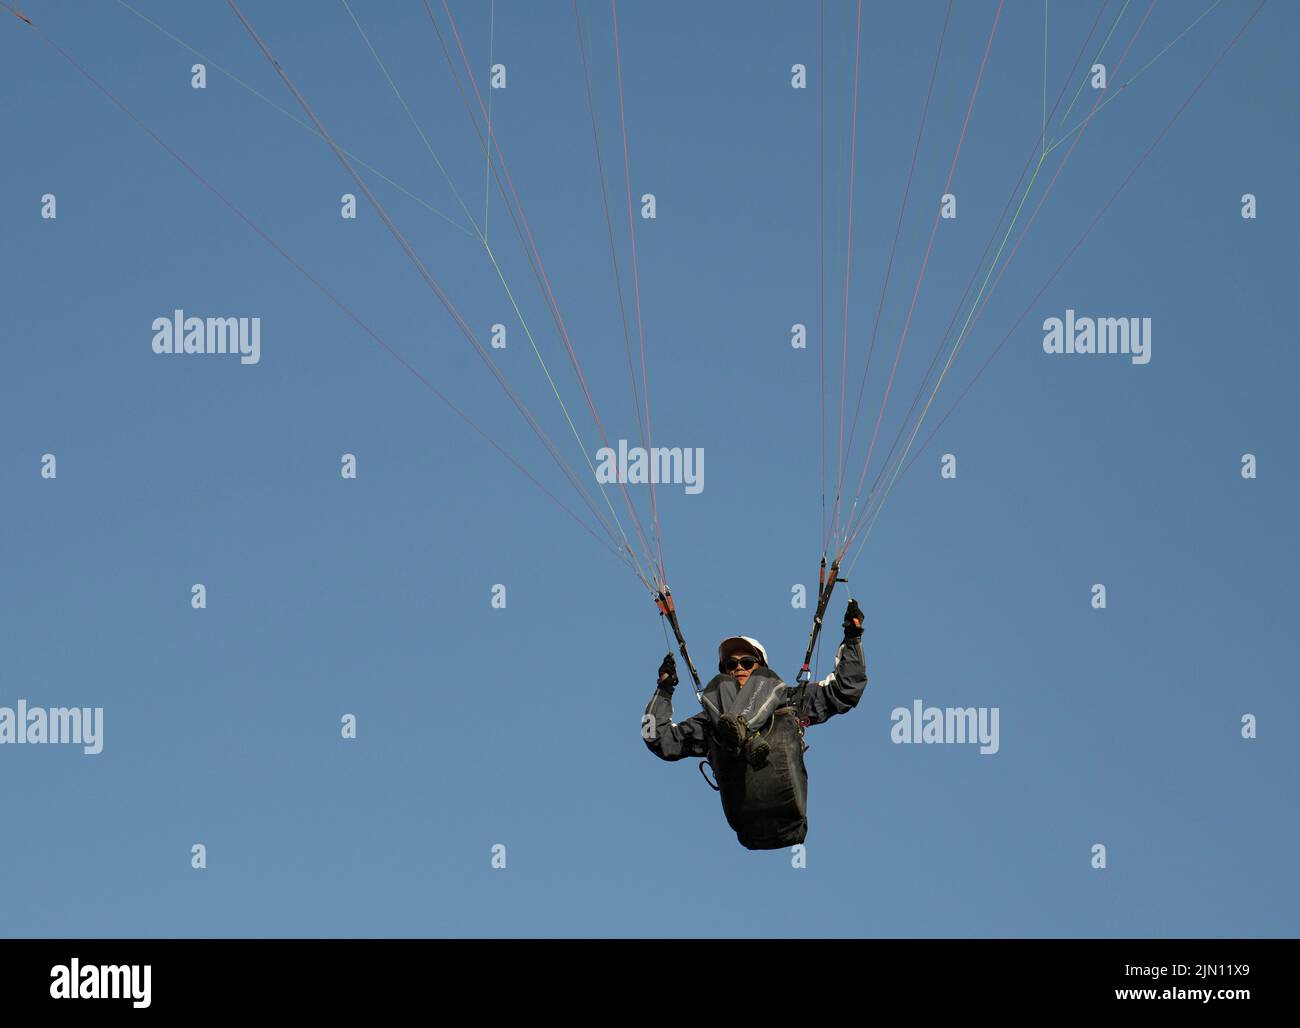 (220808) -- XINJIANG, 8. August 2022 (Xinhua) -- Chen Ruifeng gleitet am Himmel über dem südlichen Vorort Urumqi, der nordwestlichen Autonomen Region Xinjiang Uygur, am 29. Mai 2022. Der 52-jährige Chen Ruifeng, der in Xinjiang geboren wurde, ist ein Paragliding-Amateur. Er sagt, dass er sich wie mit seinen eigenen Flügeln fühlt, wenn der Gleitschirm geöffnet wird. Im Jahr 2016 begann Chen Ruifeng, Gleitschirmfliegen zu üben. Später trat er einem lokalen Verein bei und erhielt nach dem Training seine Flugbescheinigung. Als Outdoor-Enthusiast engagiert er sich auch für Trailrunning, Bergsteigen und Eisklettern. Seiner Meinung nach das einzigartige Gelände von Xinji Stockfoto